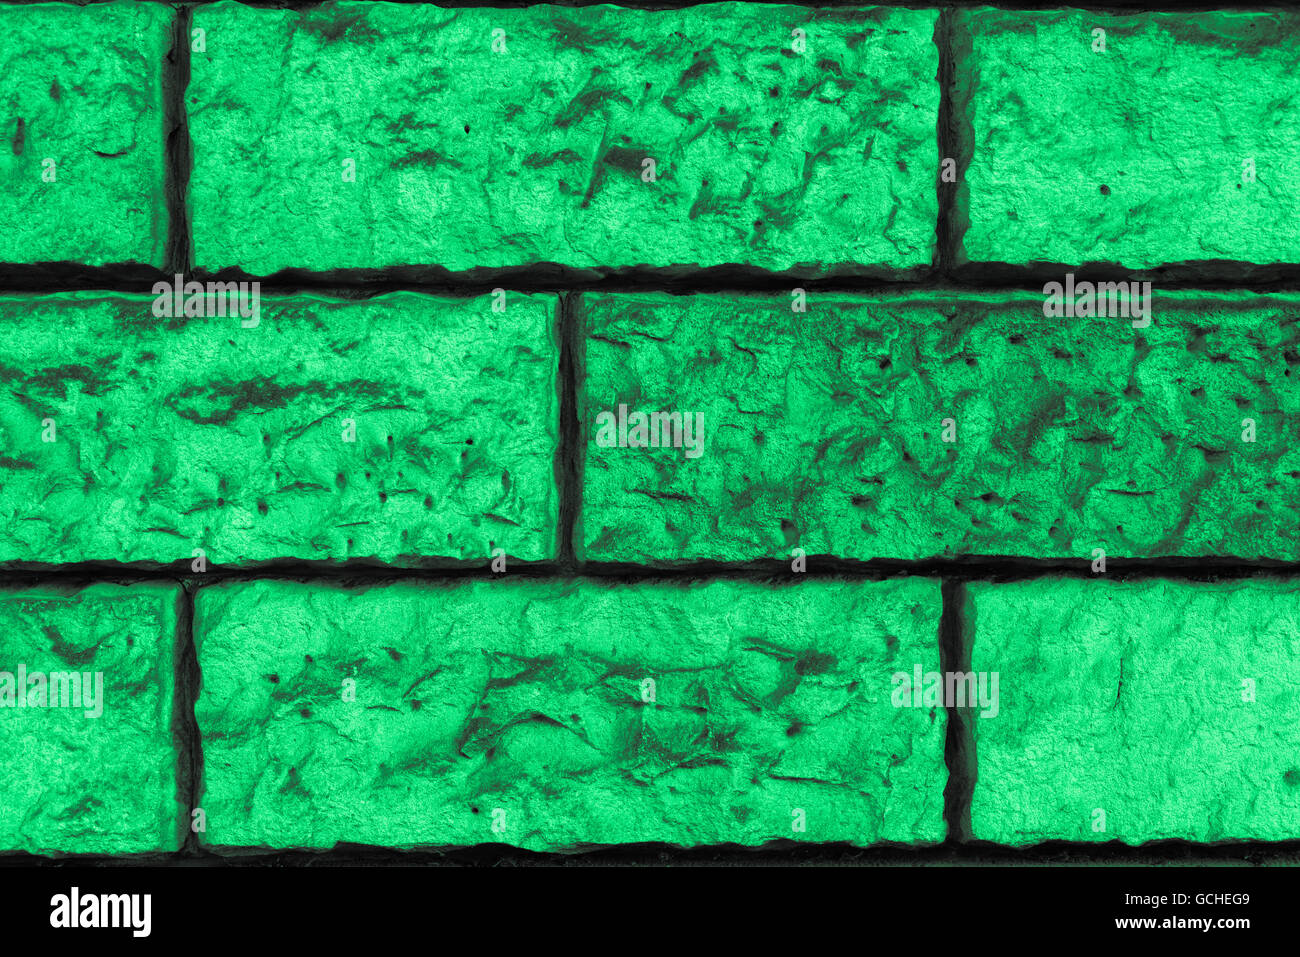 Vert menthe parfait verdâtre gris urbain naturel haute résolution de fond mur de brique Banque D'Images